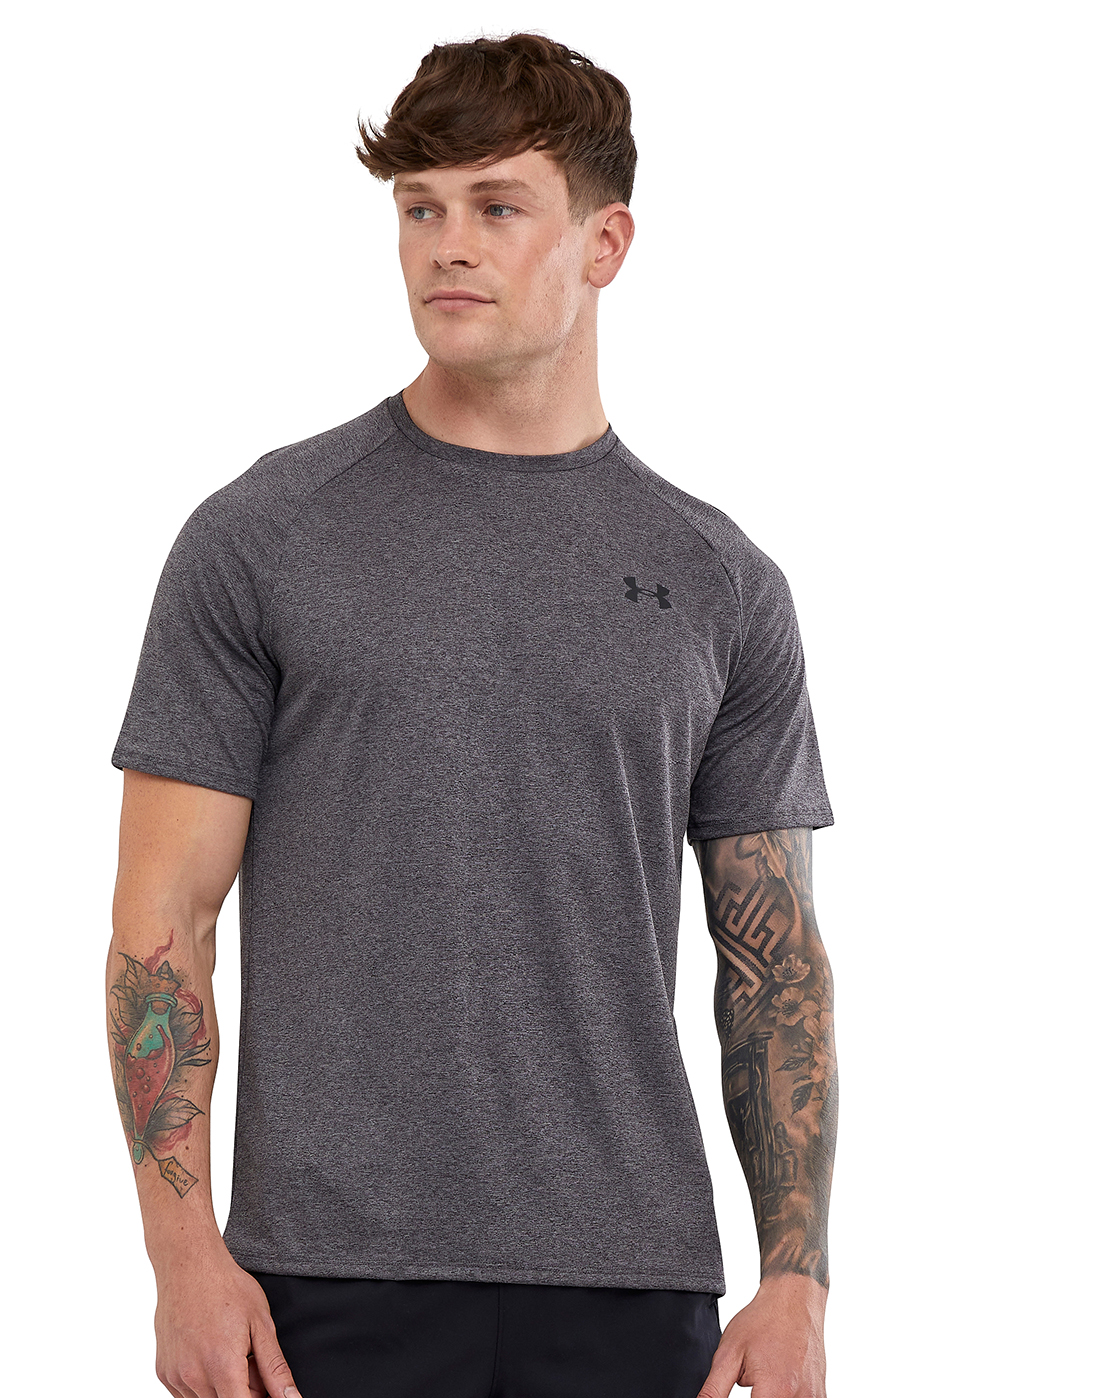 Under Armour Mens Tech T-Shirt - Grey